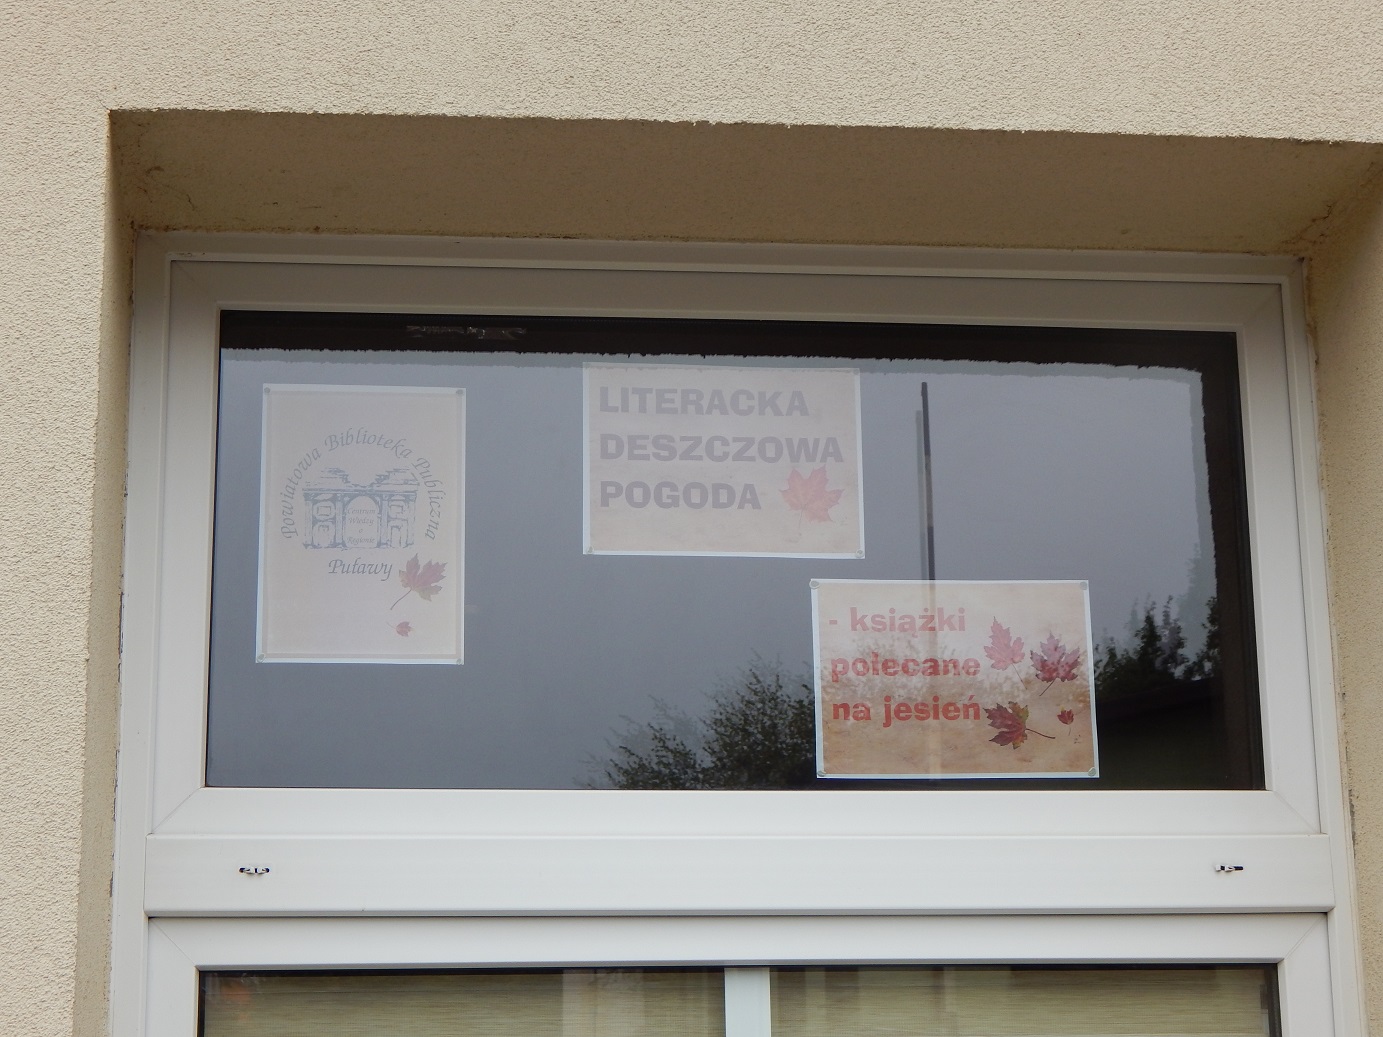 Zdjęcie prezentuje wystawę na oknach Powiatowej Biblioteki Publicznej w Puławach promującą  jesienne propozycje książkowe z wyrazem „deszcz” w tytule.